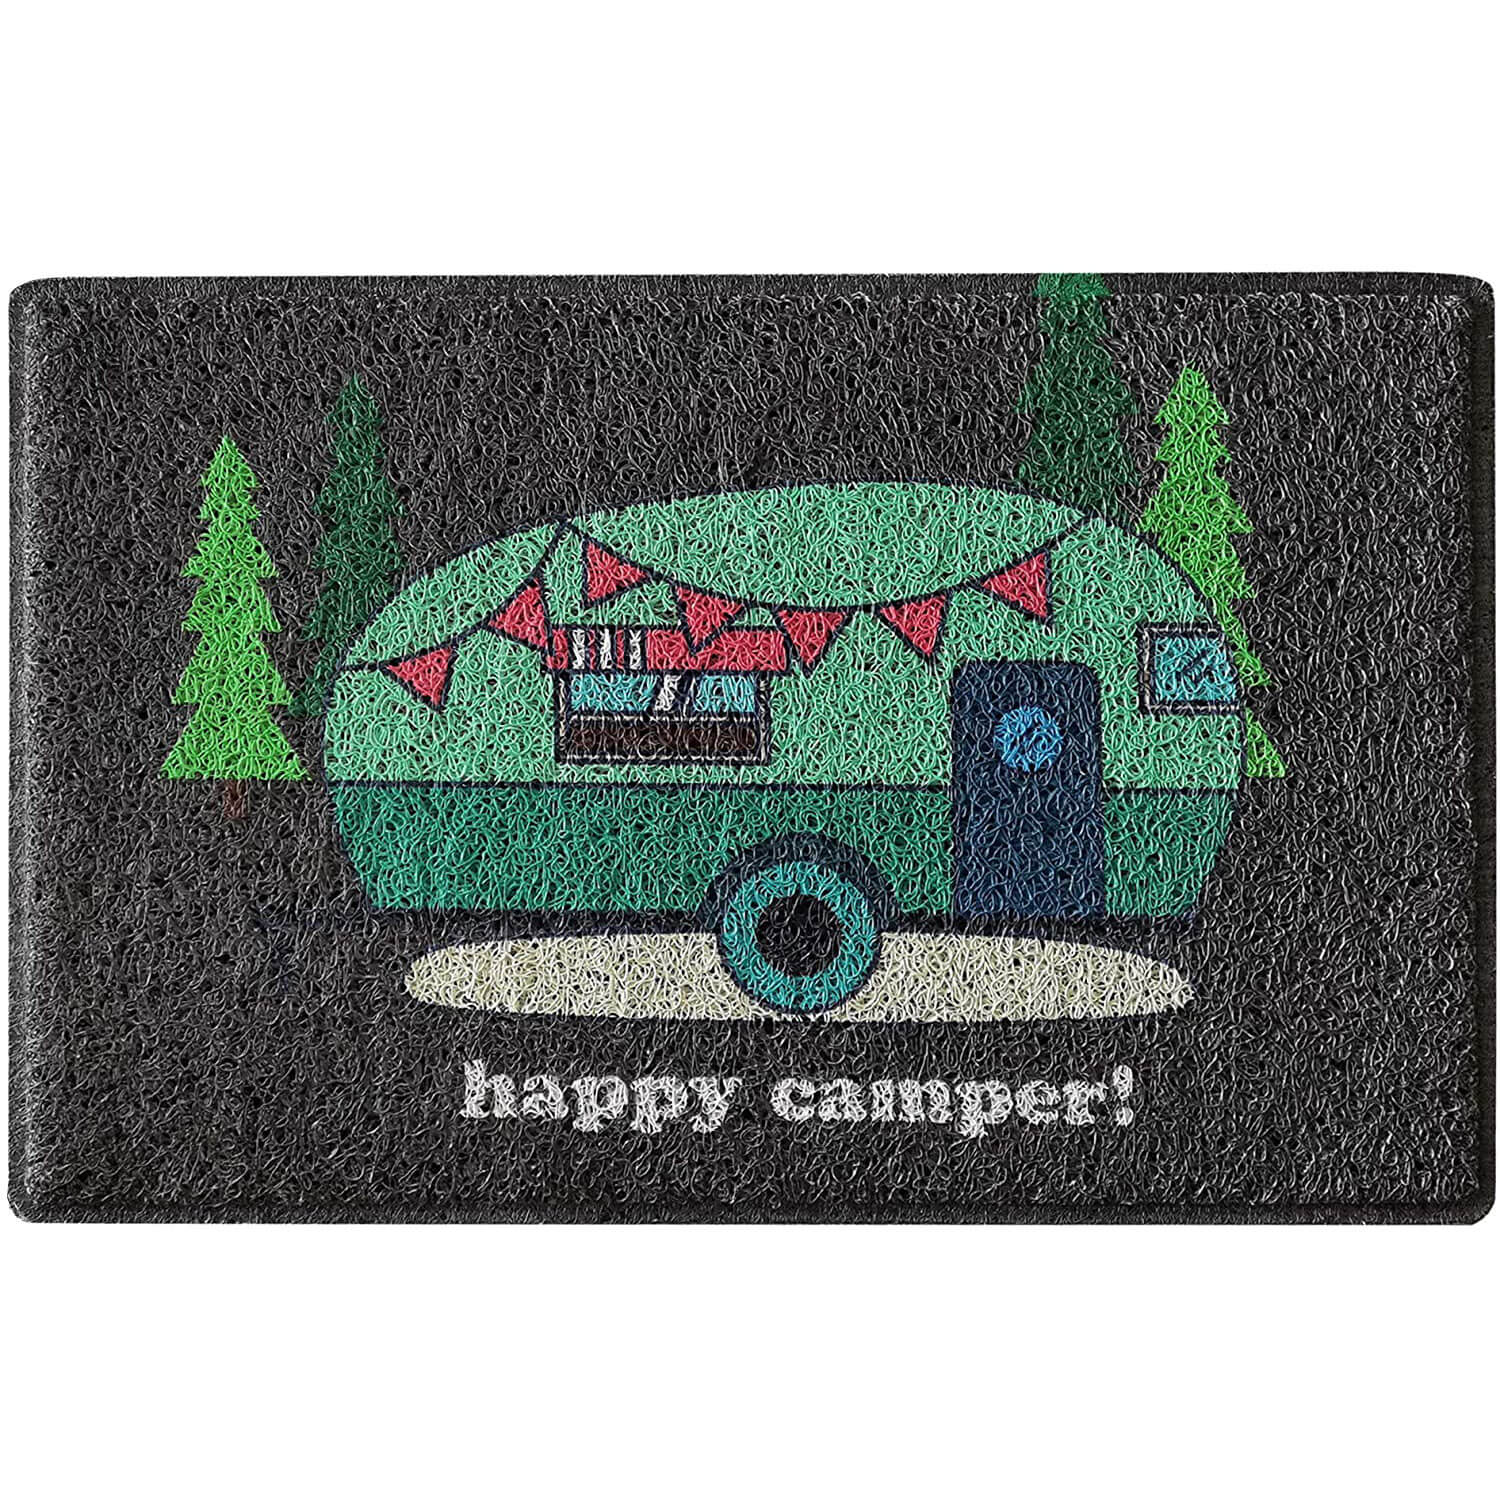 Happy Camper Funny Door Mat Rug Welcome Mat for Front Door, RV